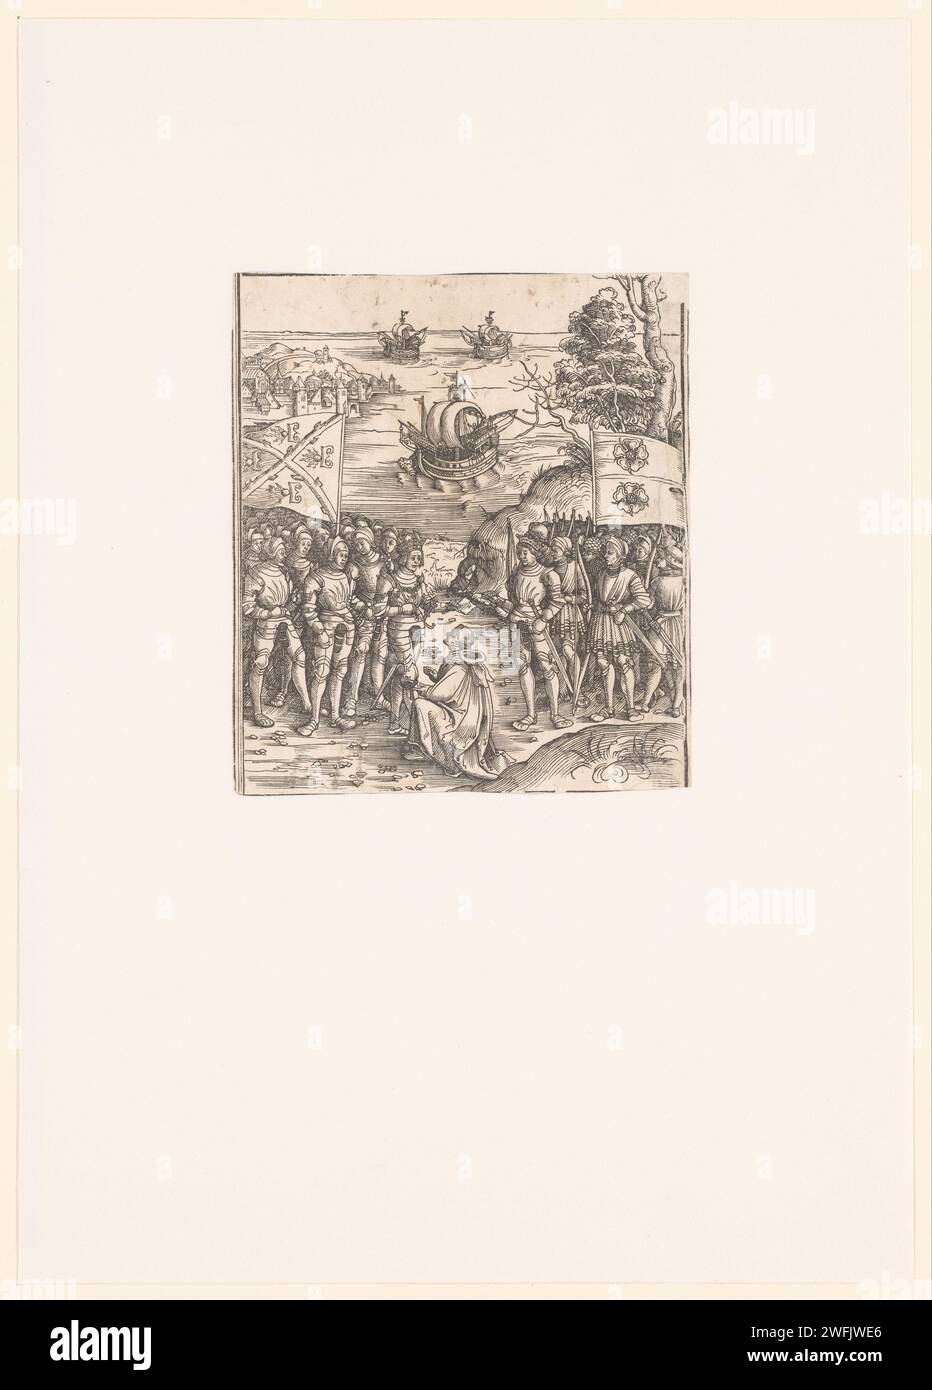 Massimiliano i d'Asburgo, imperatore del Sacro Romano Impero, conclude la pace con Enrico VII, re d'Inghilterra, anonimo, proclamazione della pace su carta stampata nel 1515 Foto Stock